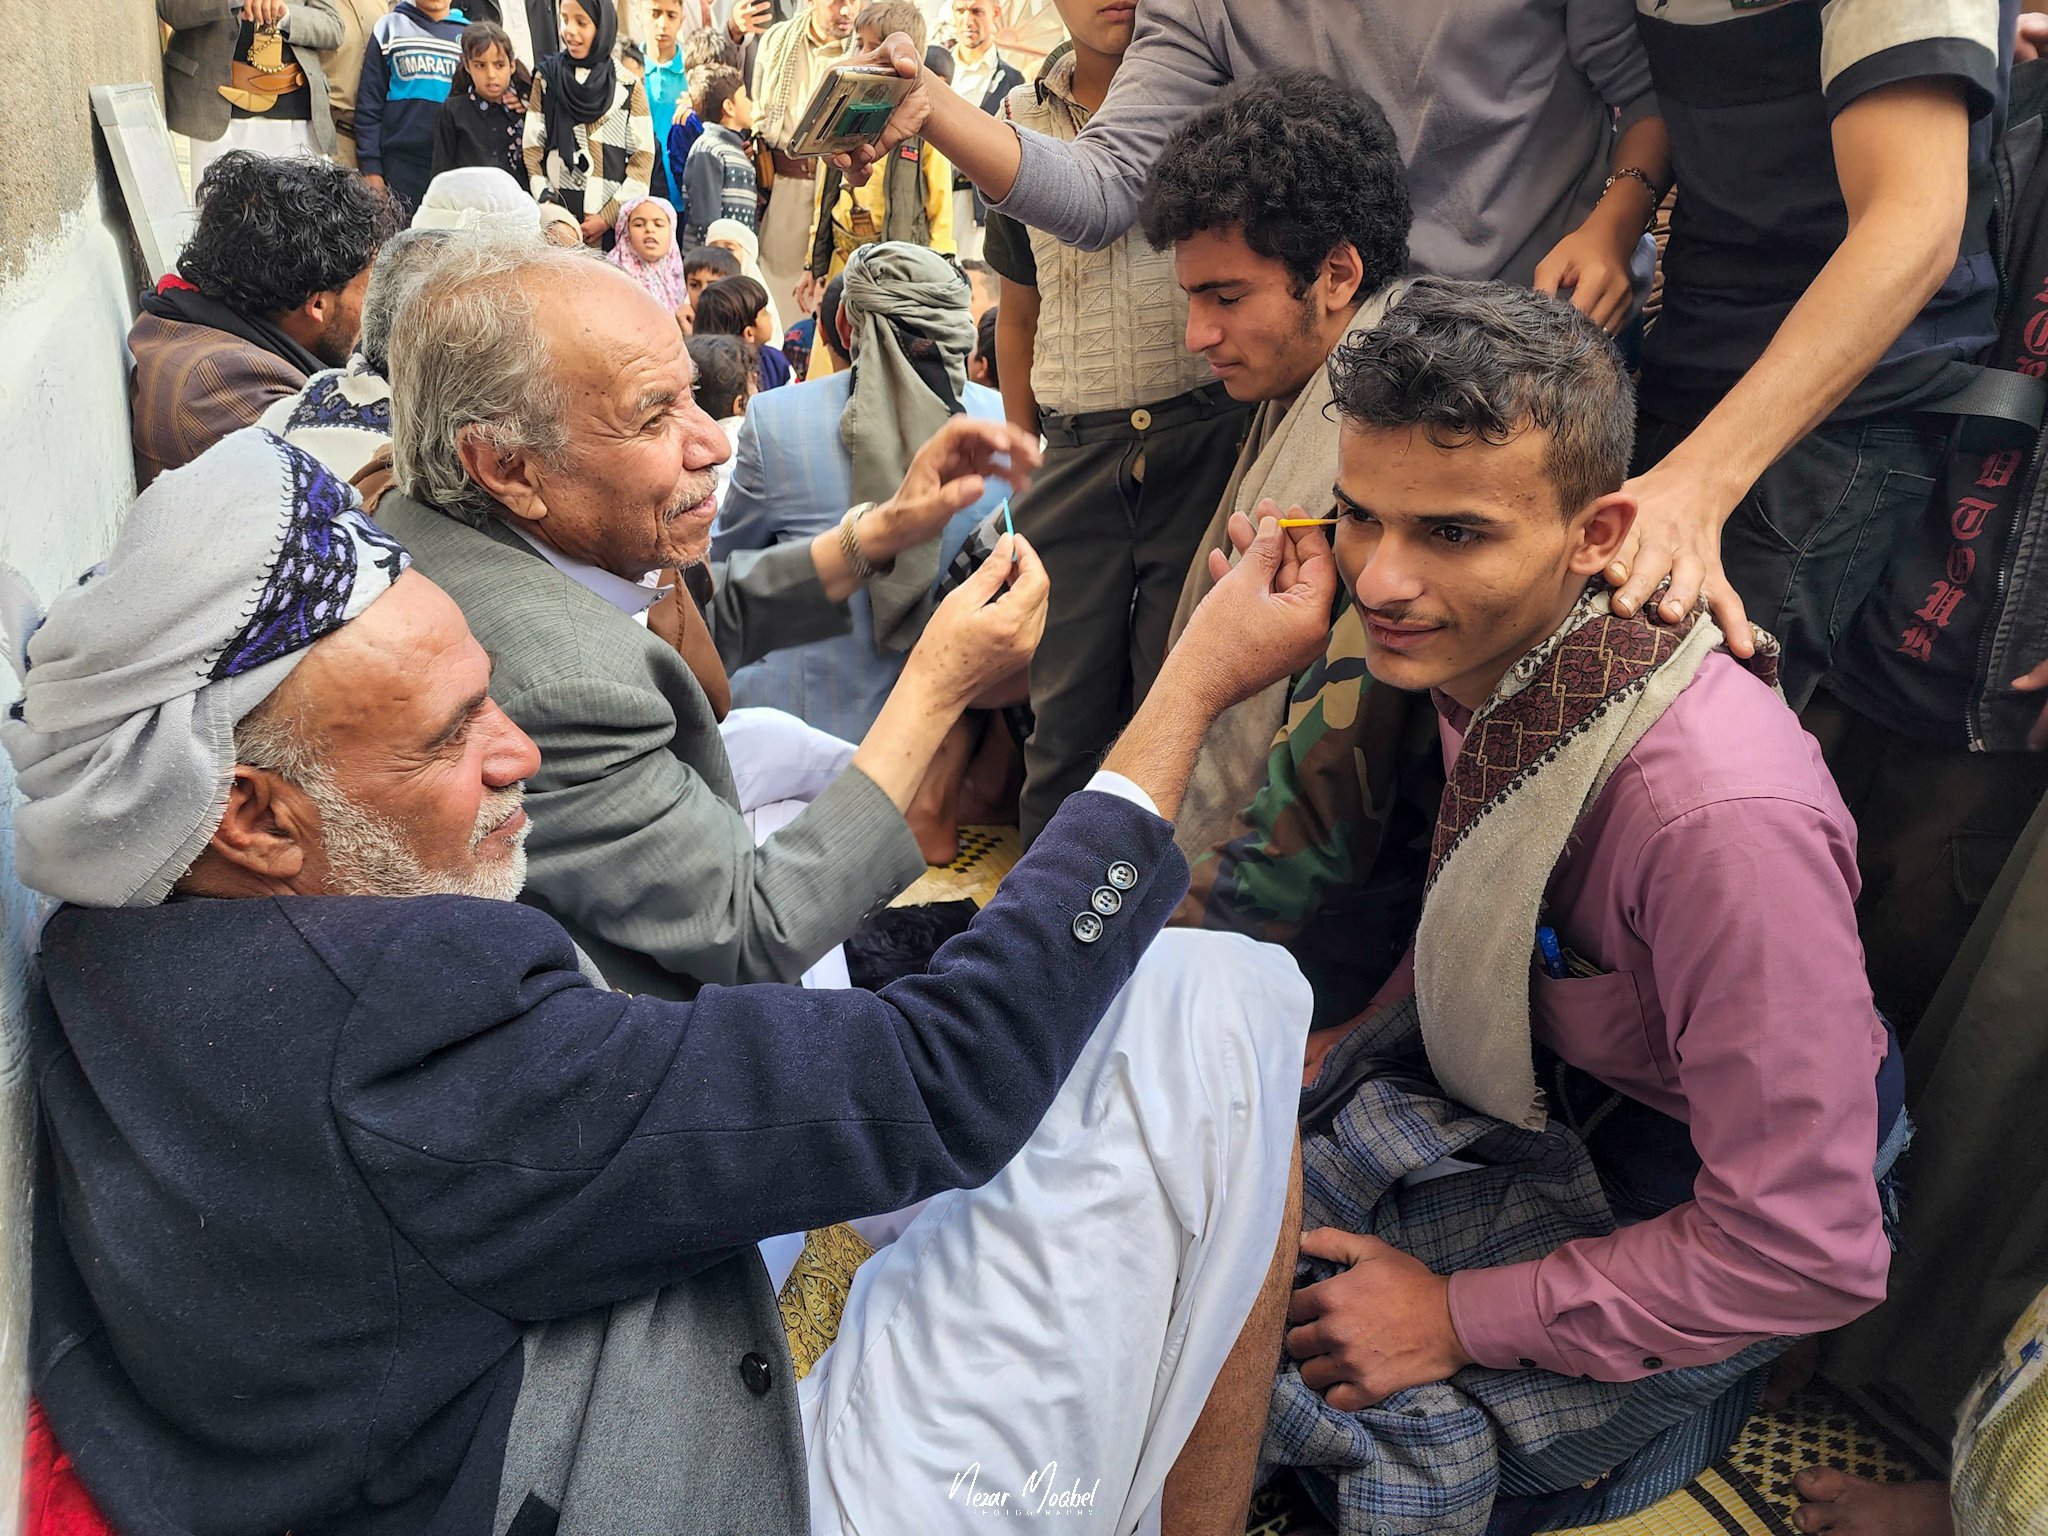 لحظة اصطفاف الكثير لتحكيل عيونهم في صنعاء (تويتر)